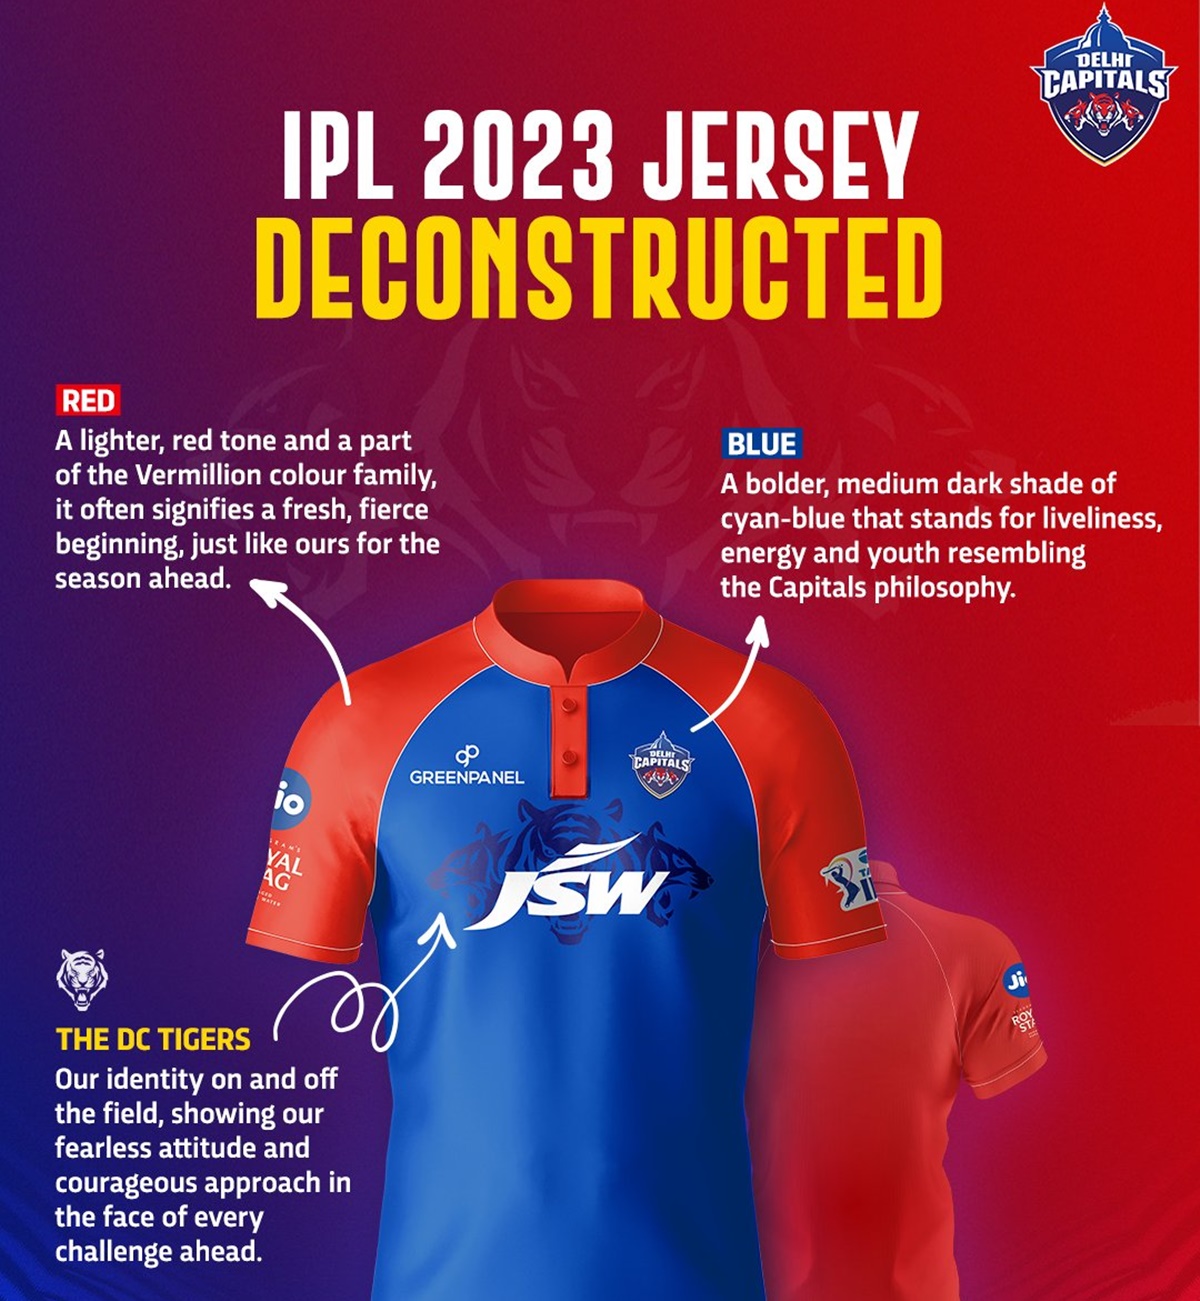 IPL 2023 - All IPL Teams Home & Away Jersey For IPL 2023 